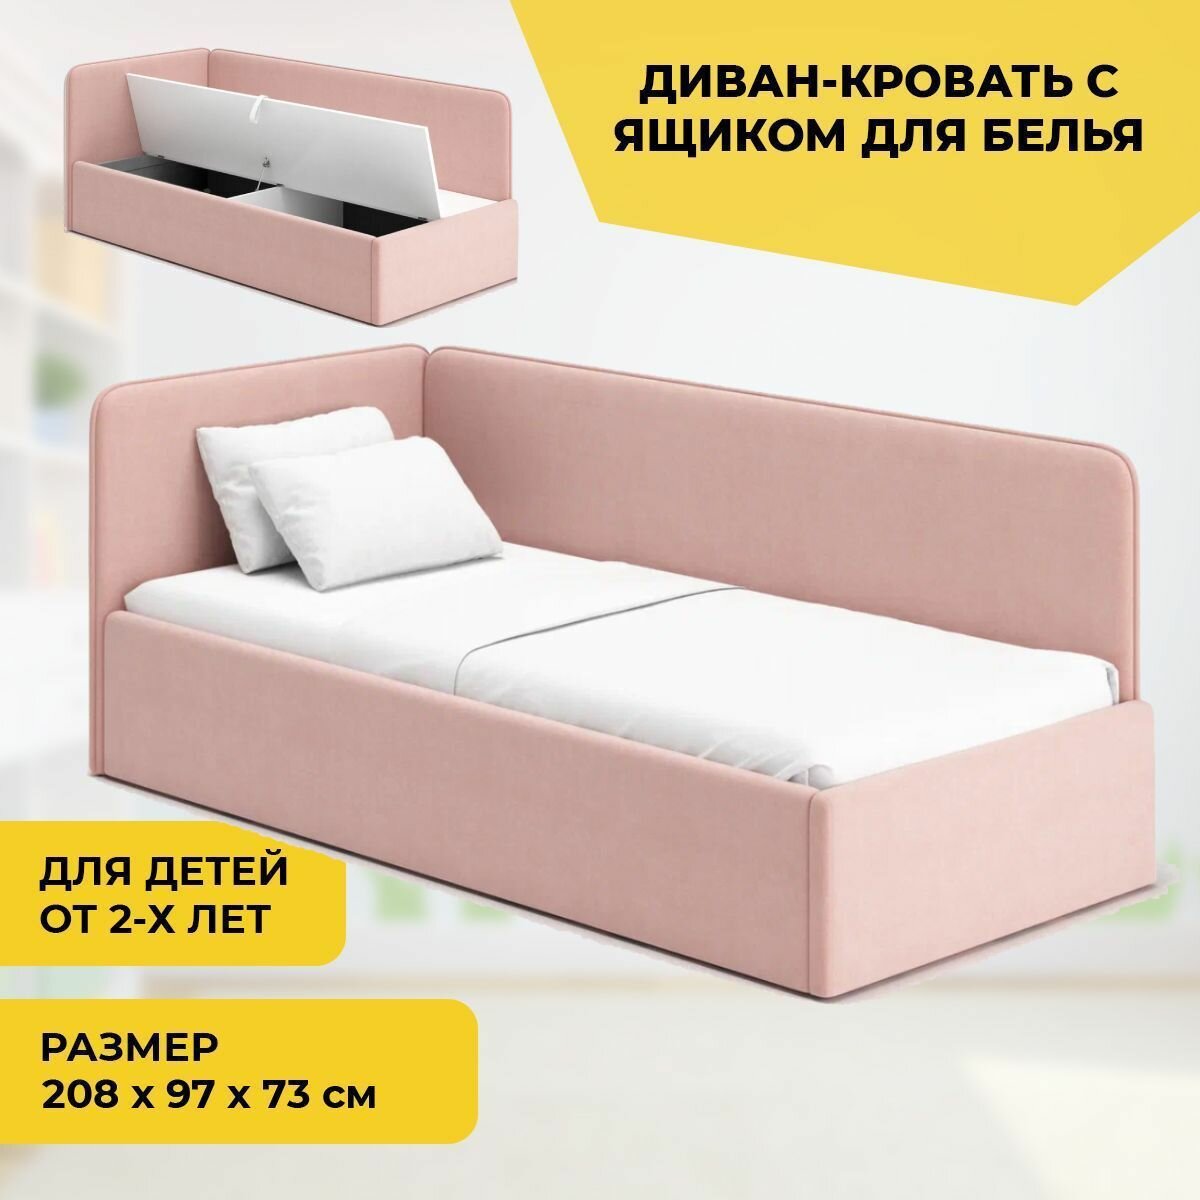 Детский диван-кровать "Leonardo" розовый с ящиком для белья, спальное место 200х90, (цвет Роза)